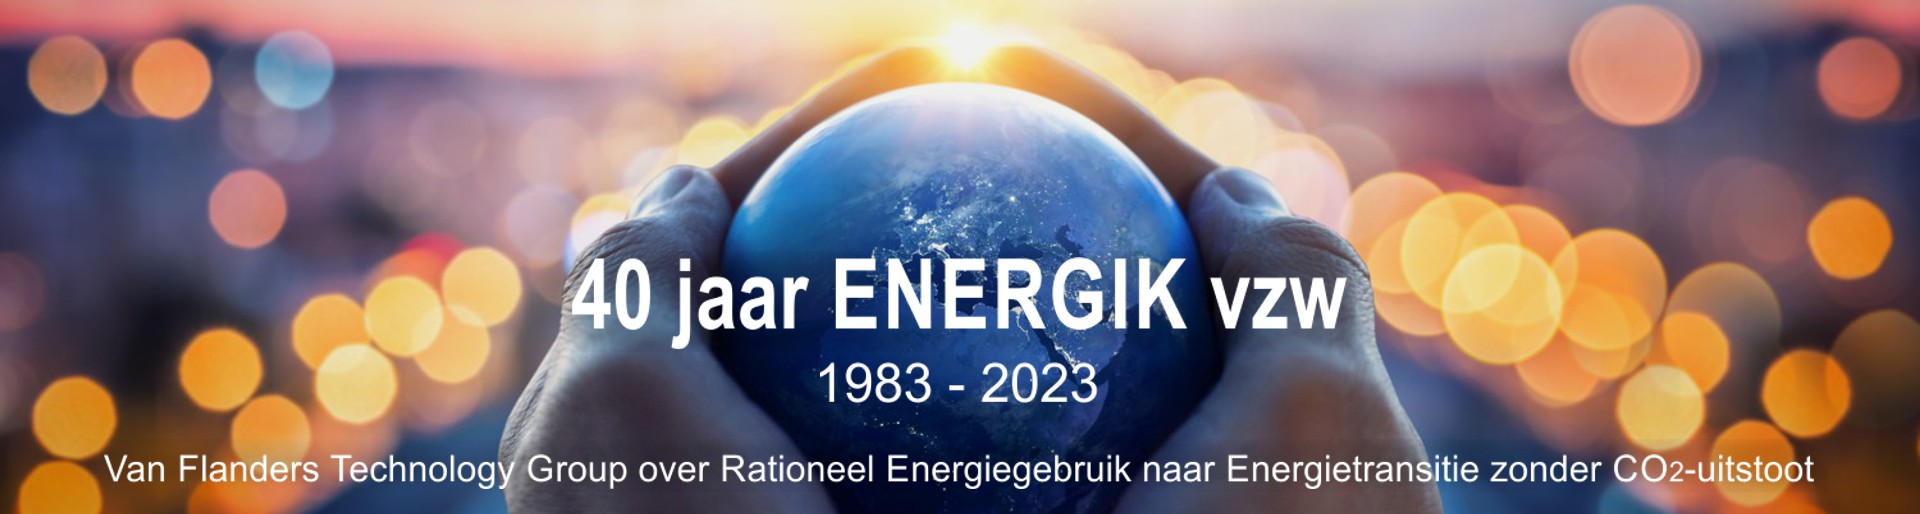 40 jaar ENERGIK vzw